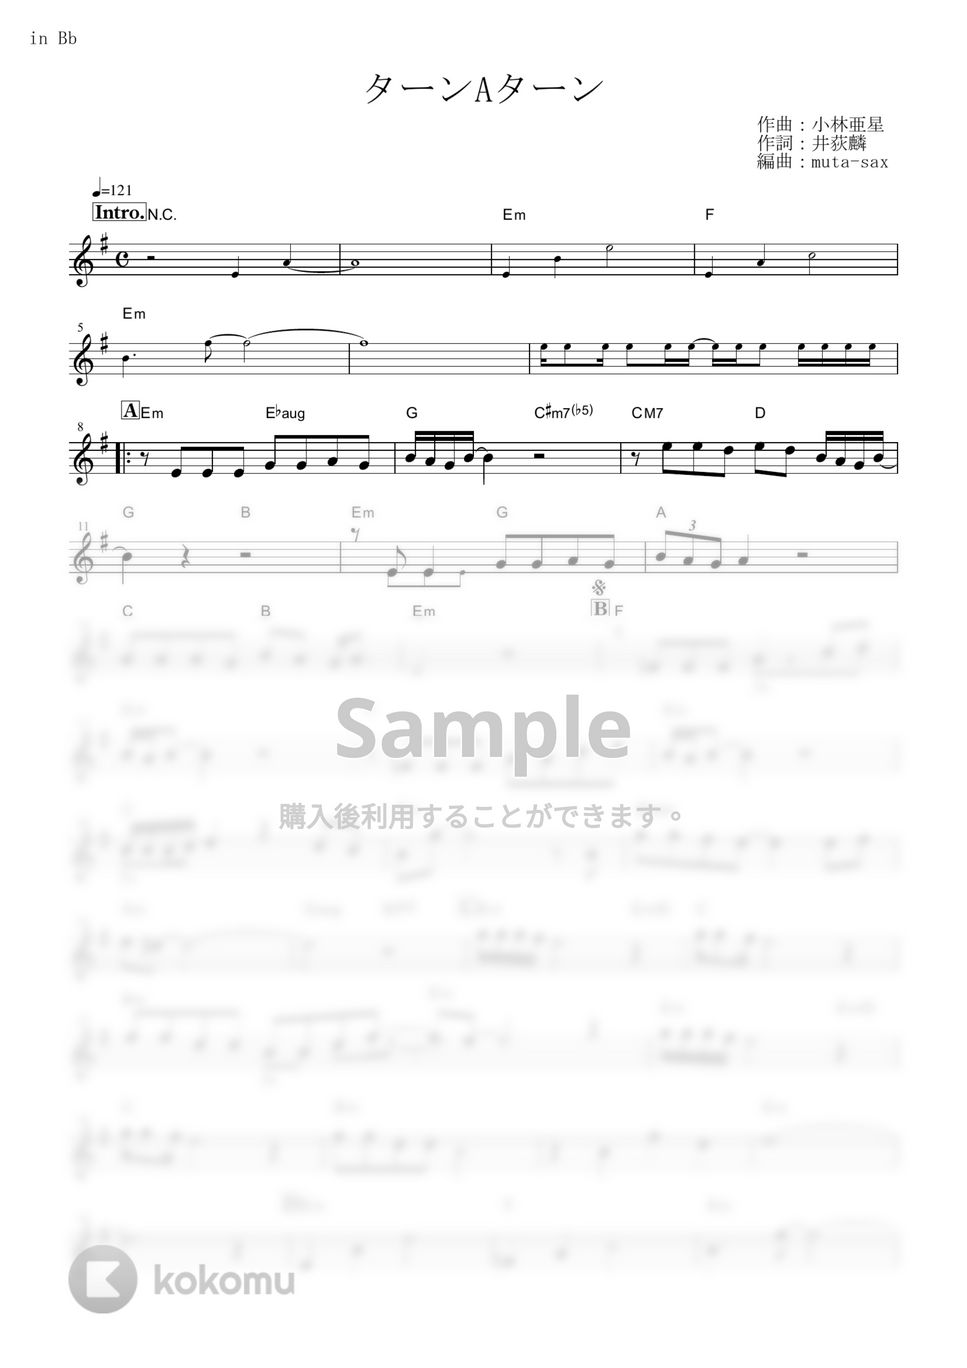 西城秀樹 - ターンAターン (『∀ガンダム』 / in Bb) by muta-sax